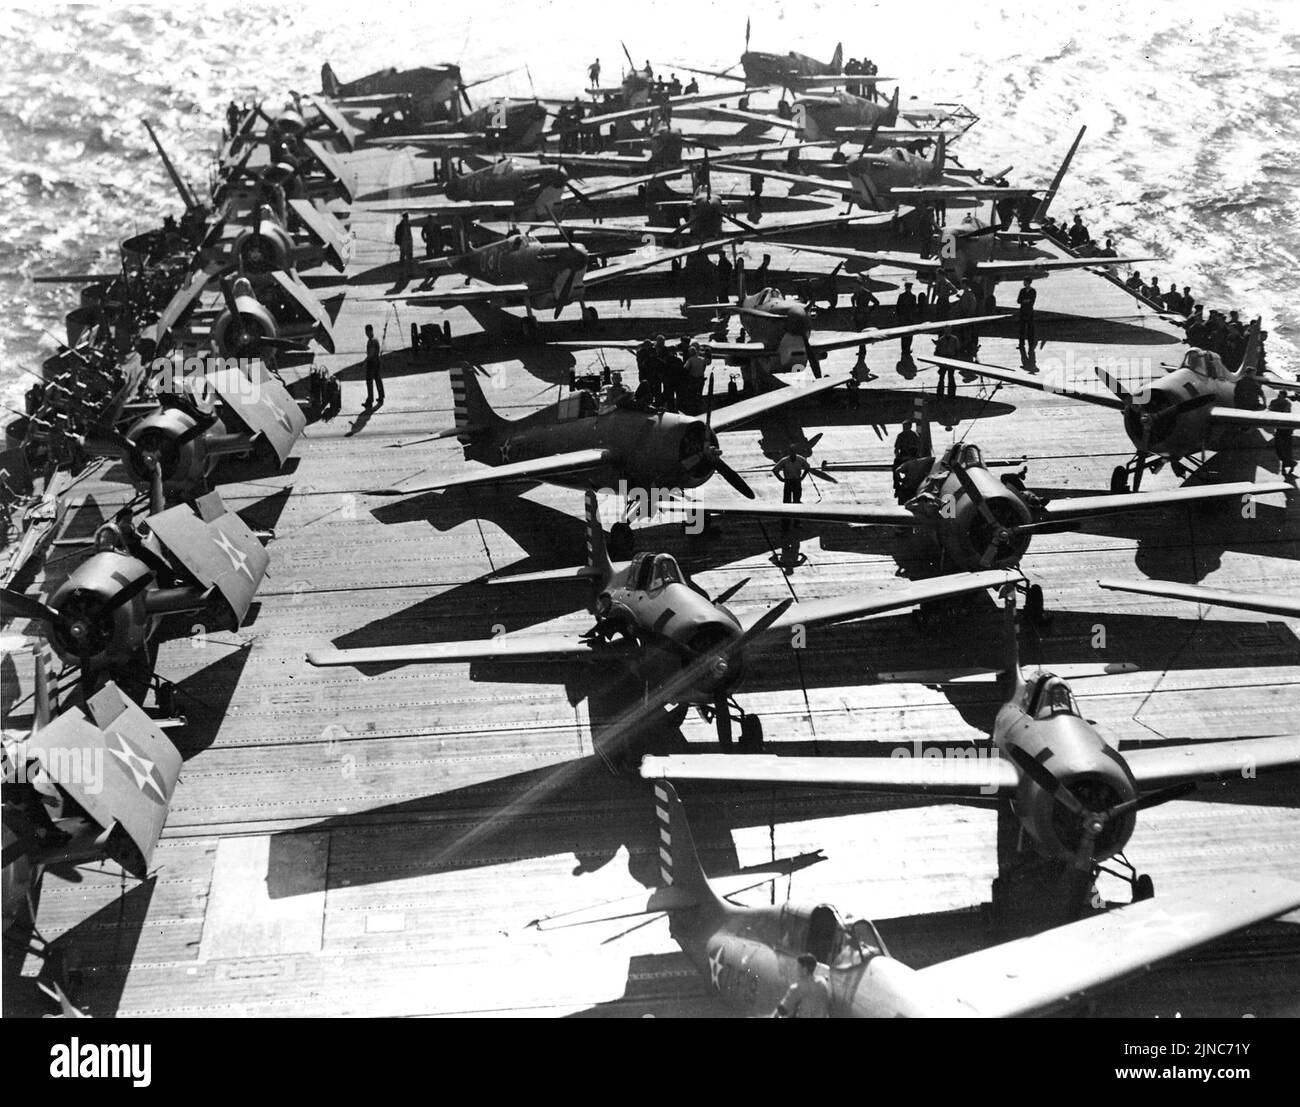 Supermarine Spitfires et Grumman Wildcats à bord du porte-avions américain USS Wasp le 19 avril 1942. L'USS Wasp a été coulé quelques mois plus tard après avoir été torpillé pendant l'invasion de Guadalcanal en septembre 1942. Banque D'Images